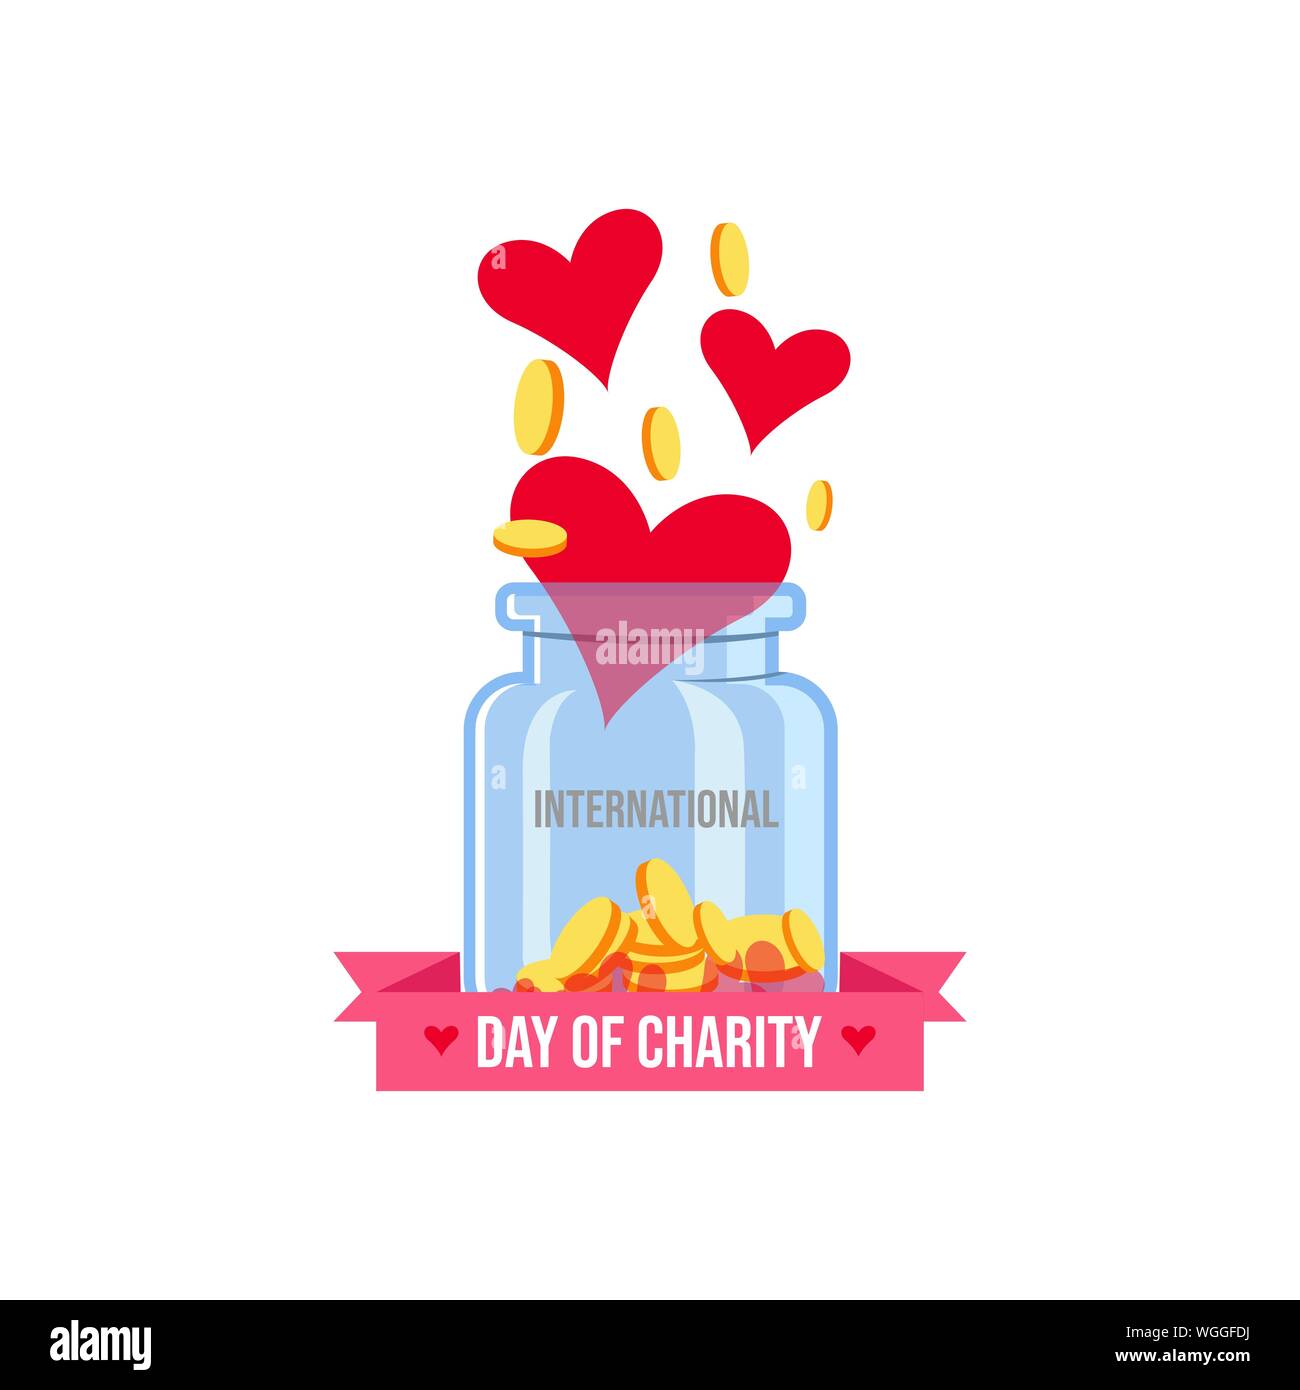 Donazioni internazionali sulla giornata internazionale della carità vettore banner e poster image Illustrazione Vettoriale